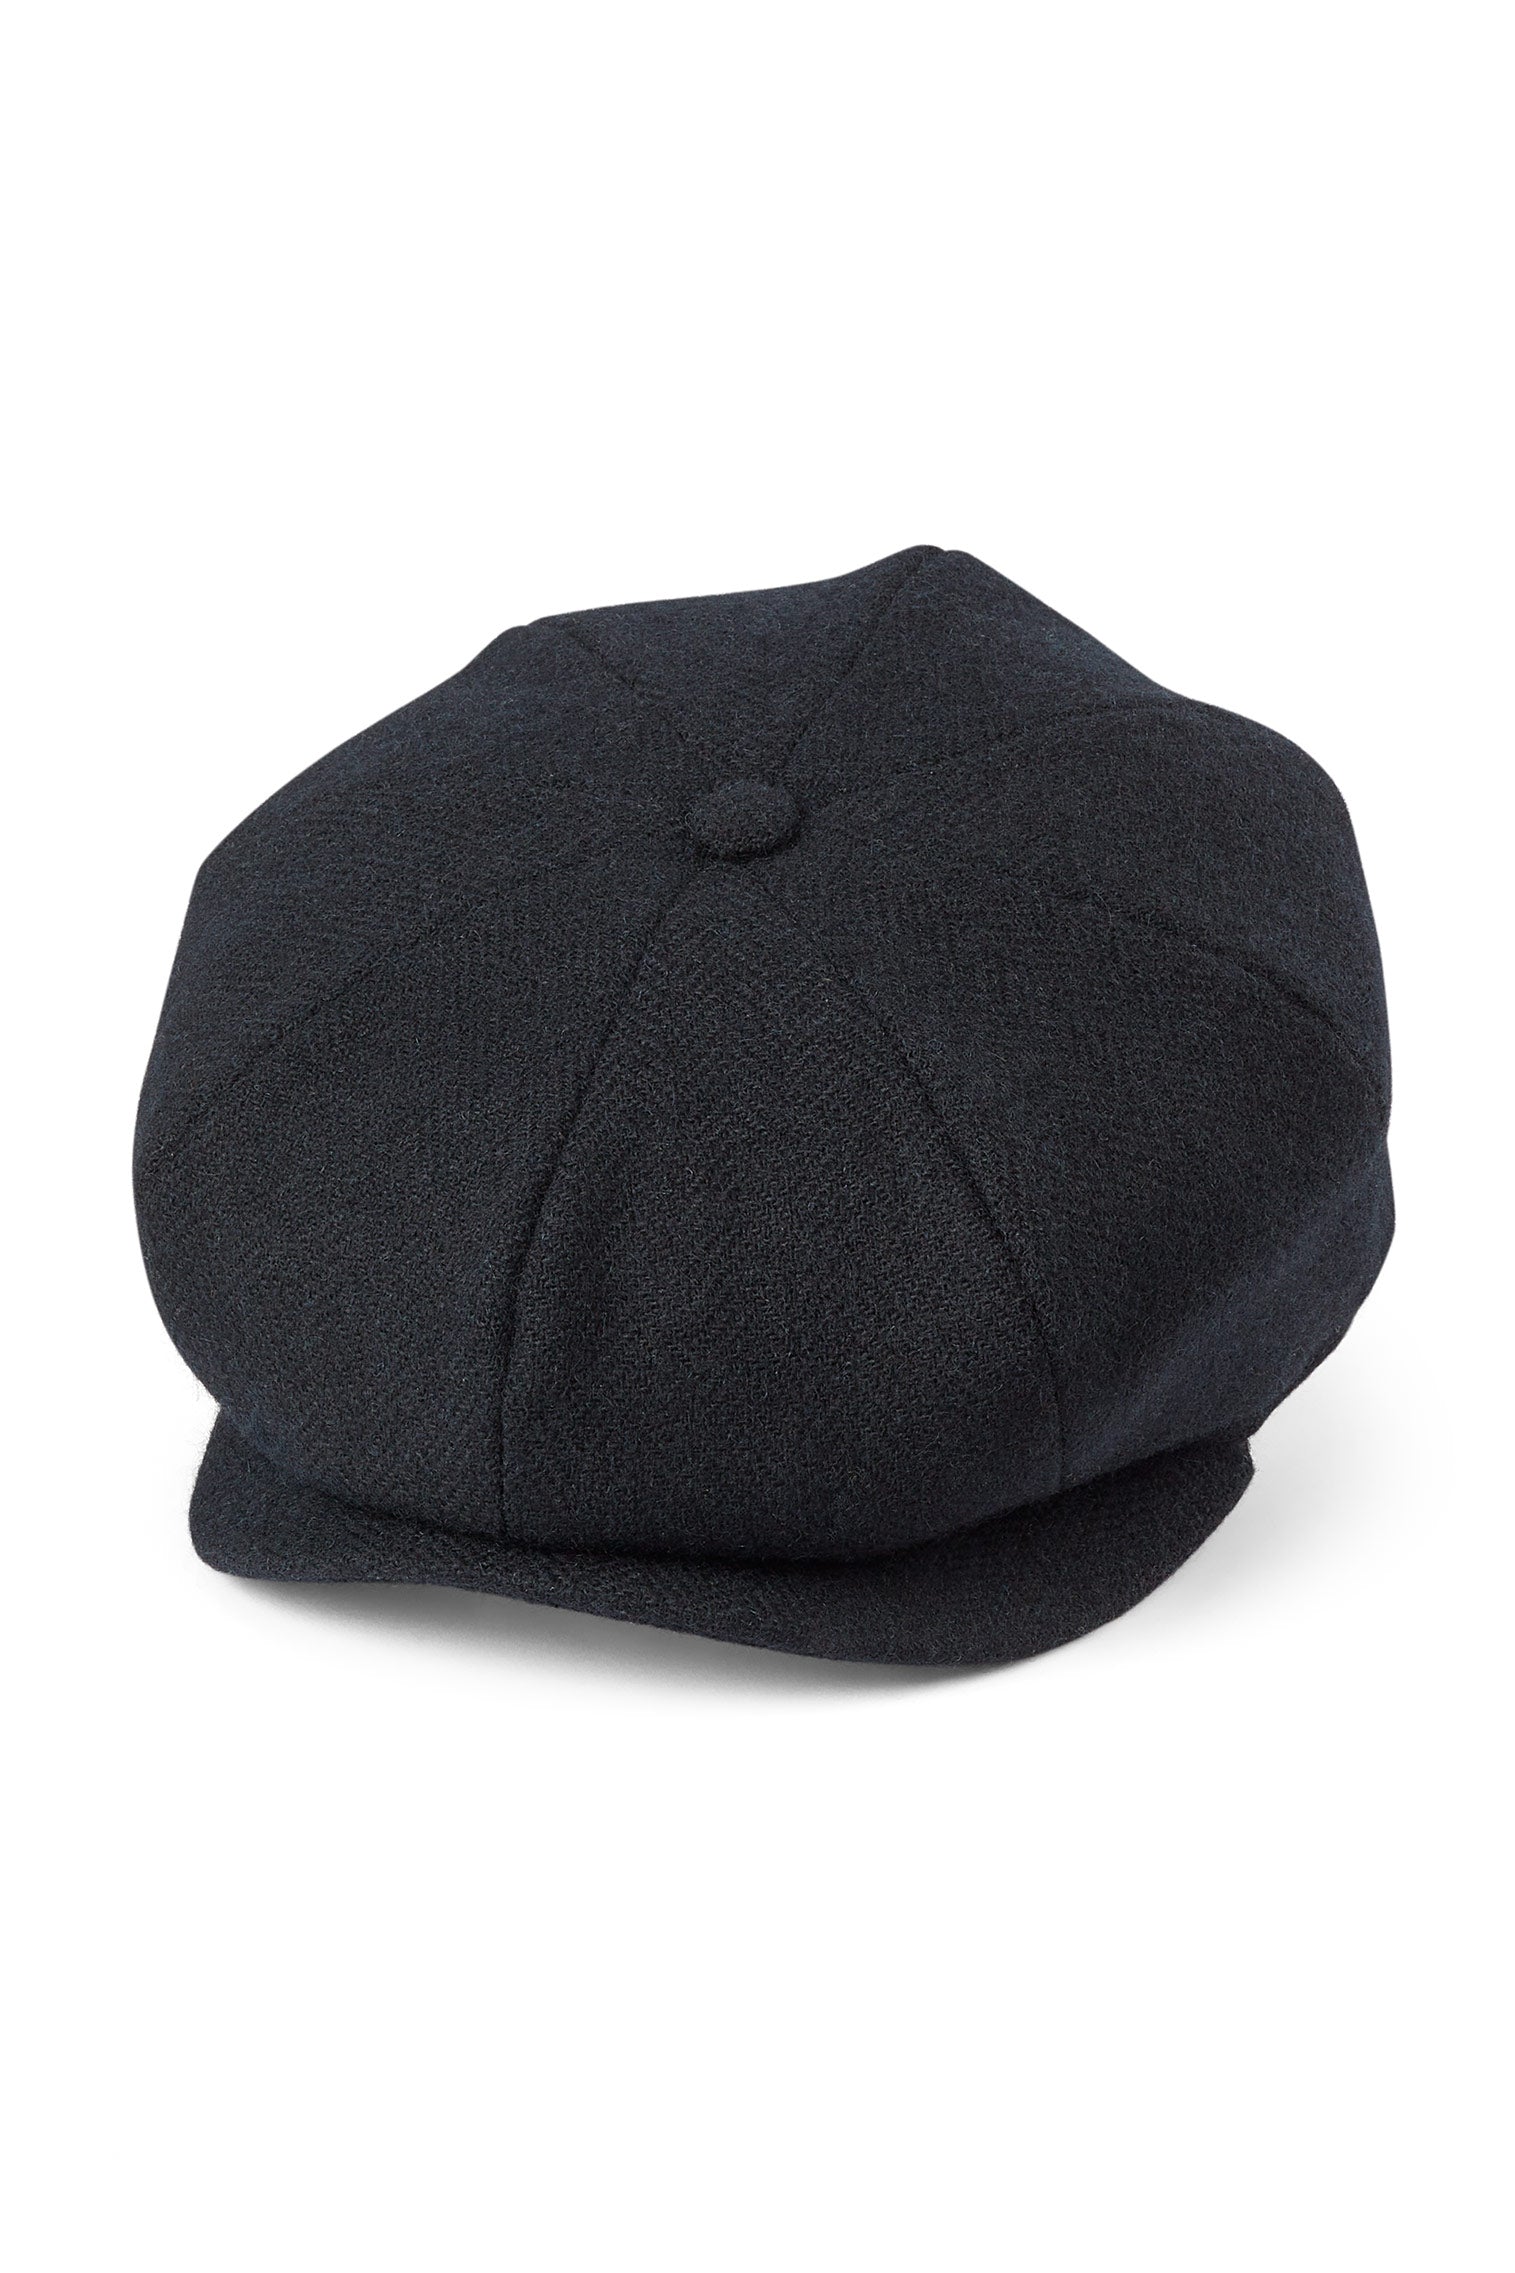 Tremelo Black Bakerboy Cap - Men's Hats - Lock & Co. Hatters London UK